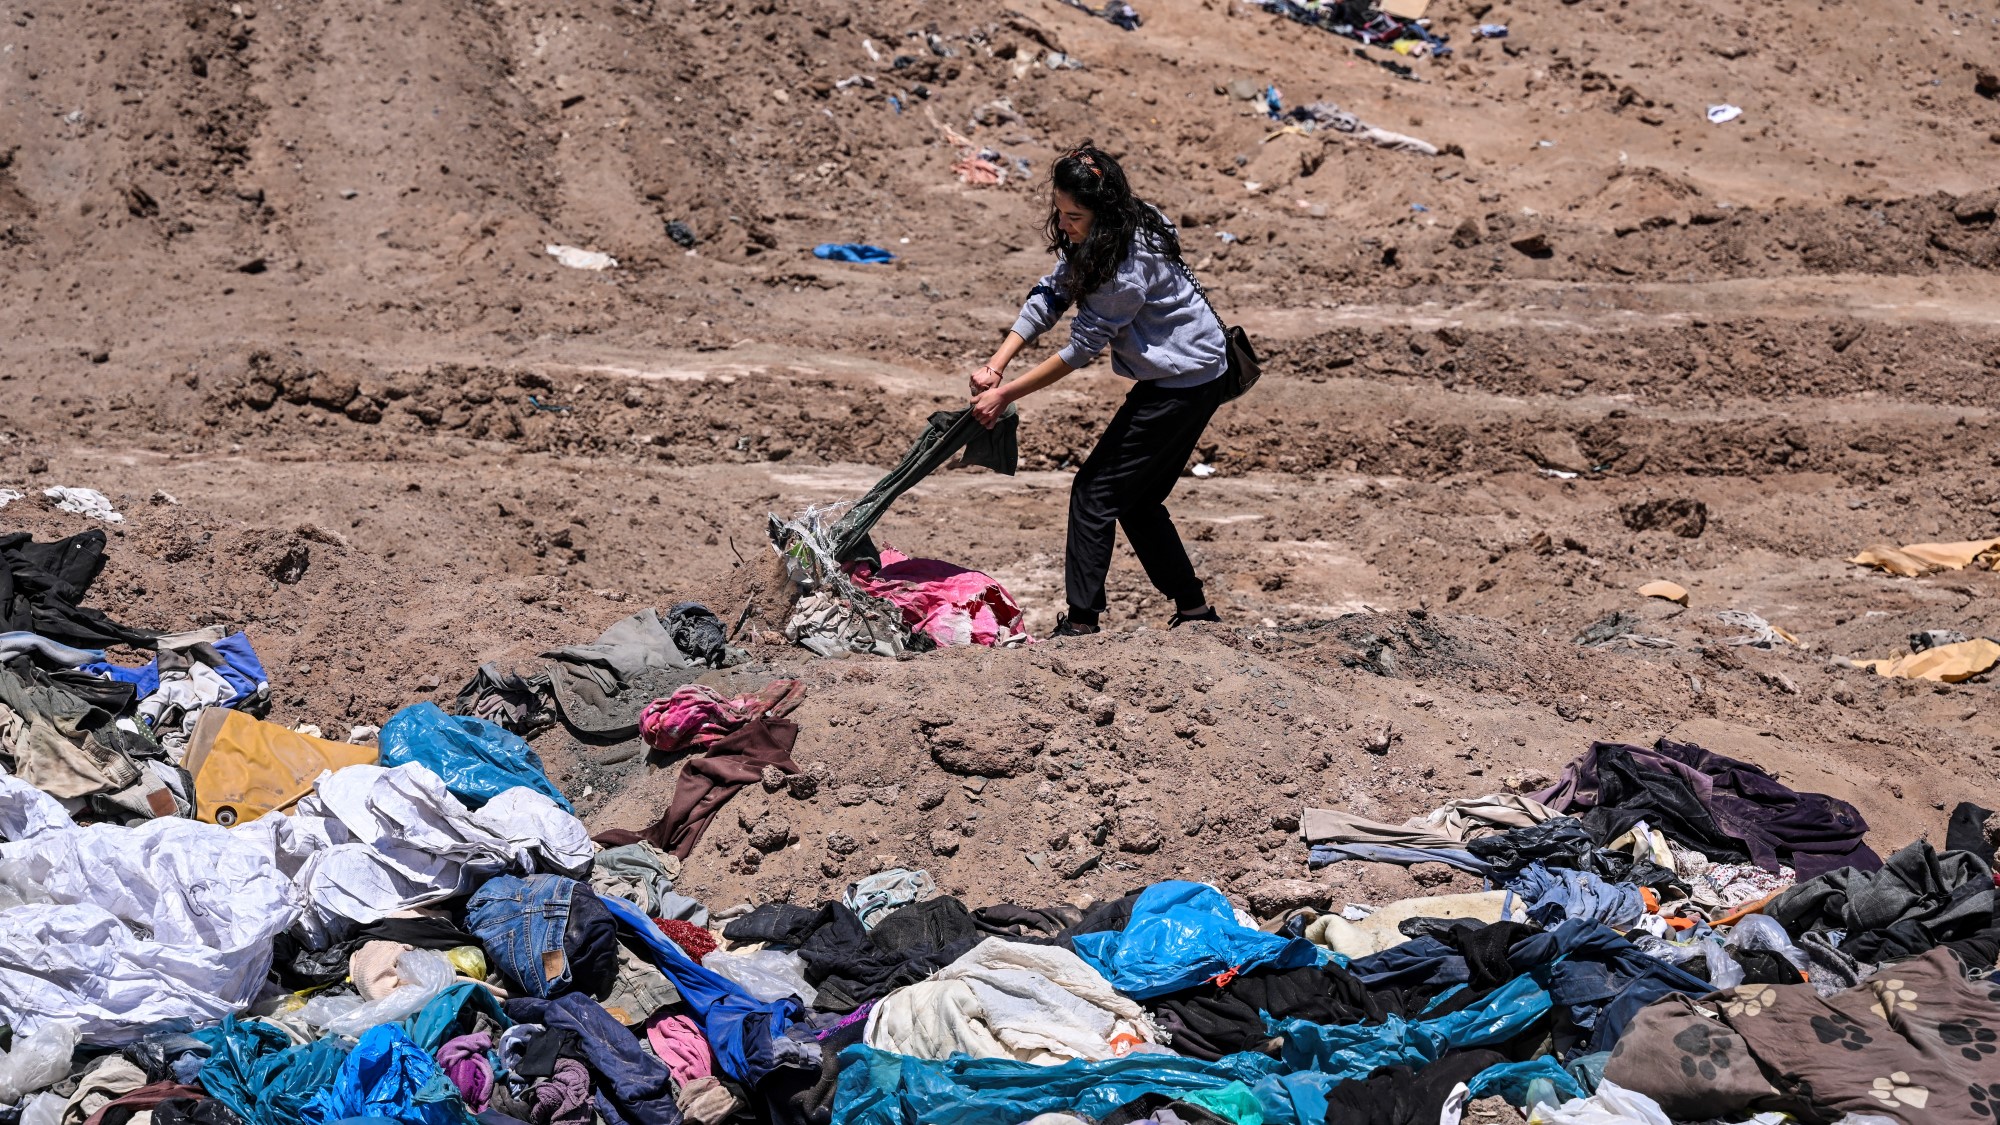 Paulina Silva ügyvédnő mutatja a sivatagba dobott ruhákat a chilei Iquique városától mintegy 10 kilométerre.